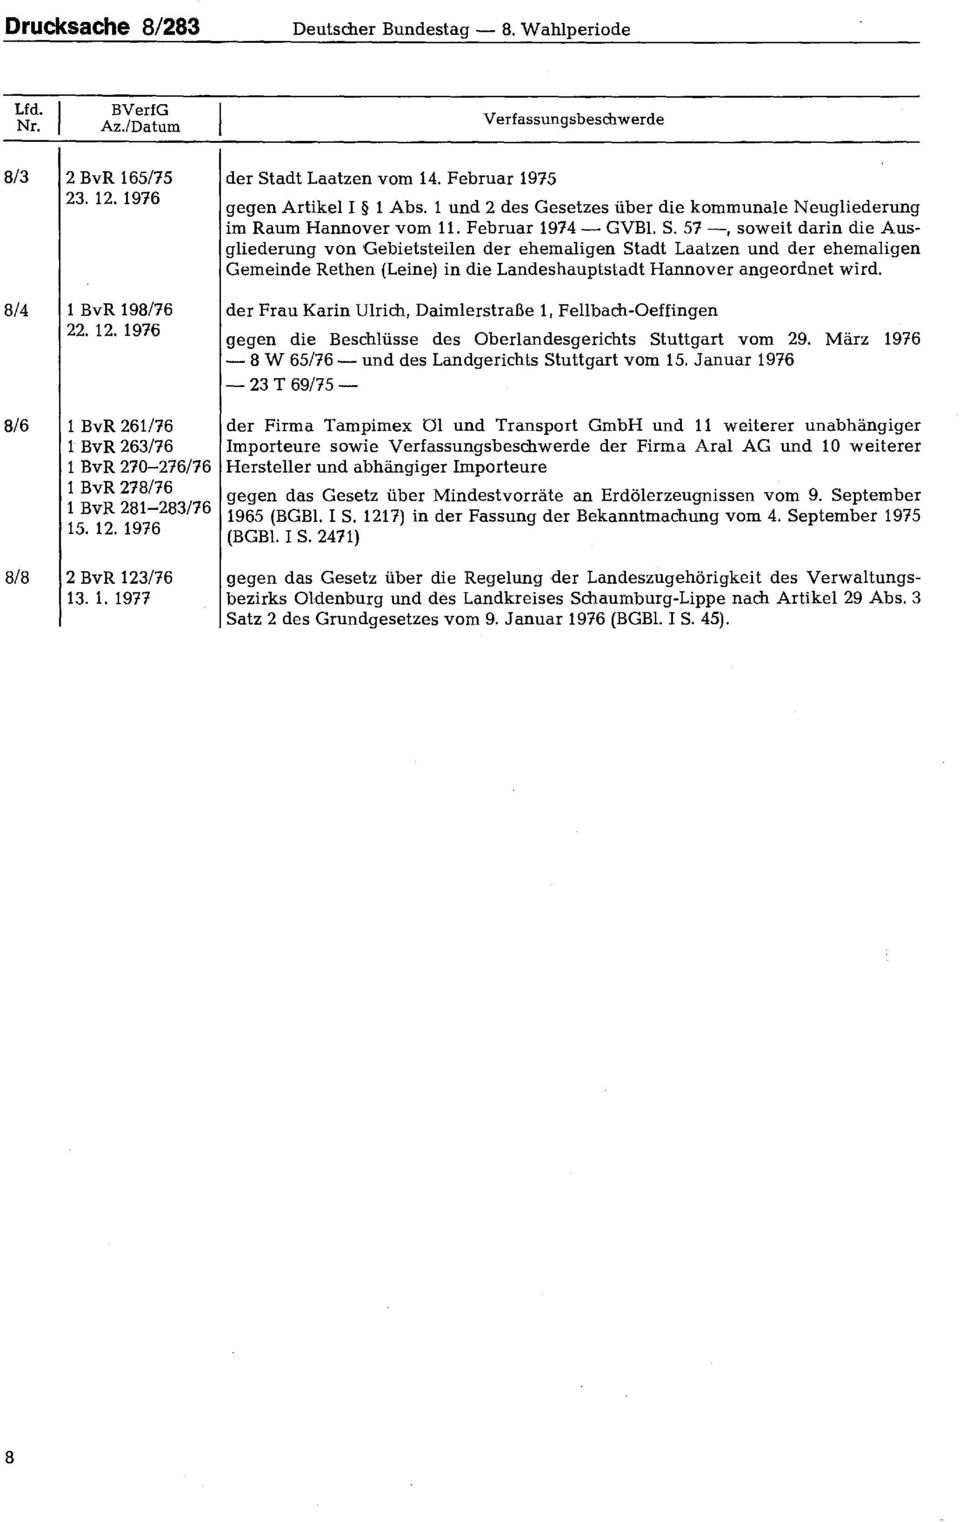 adt Laatzen vom 14. Februar 1975 gegen Artikel I 1 Abs. 1 und 2 des Gesetzes über die kommunale Neugliederung im Raum Hannover vom 11. Februar 1974 GVBl. S.